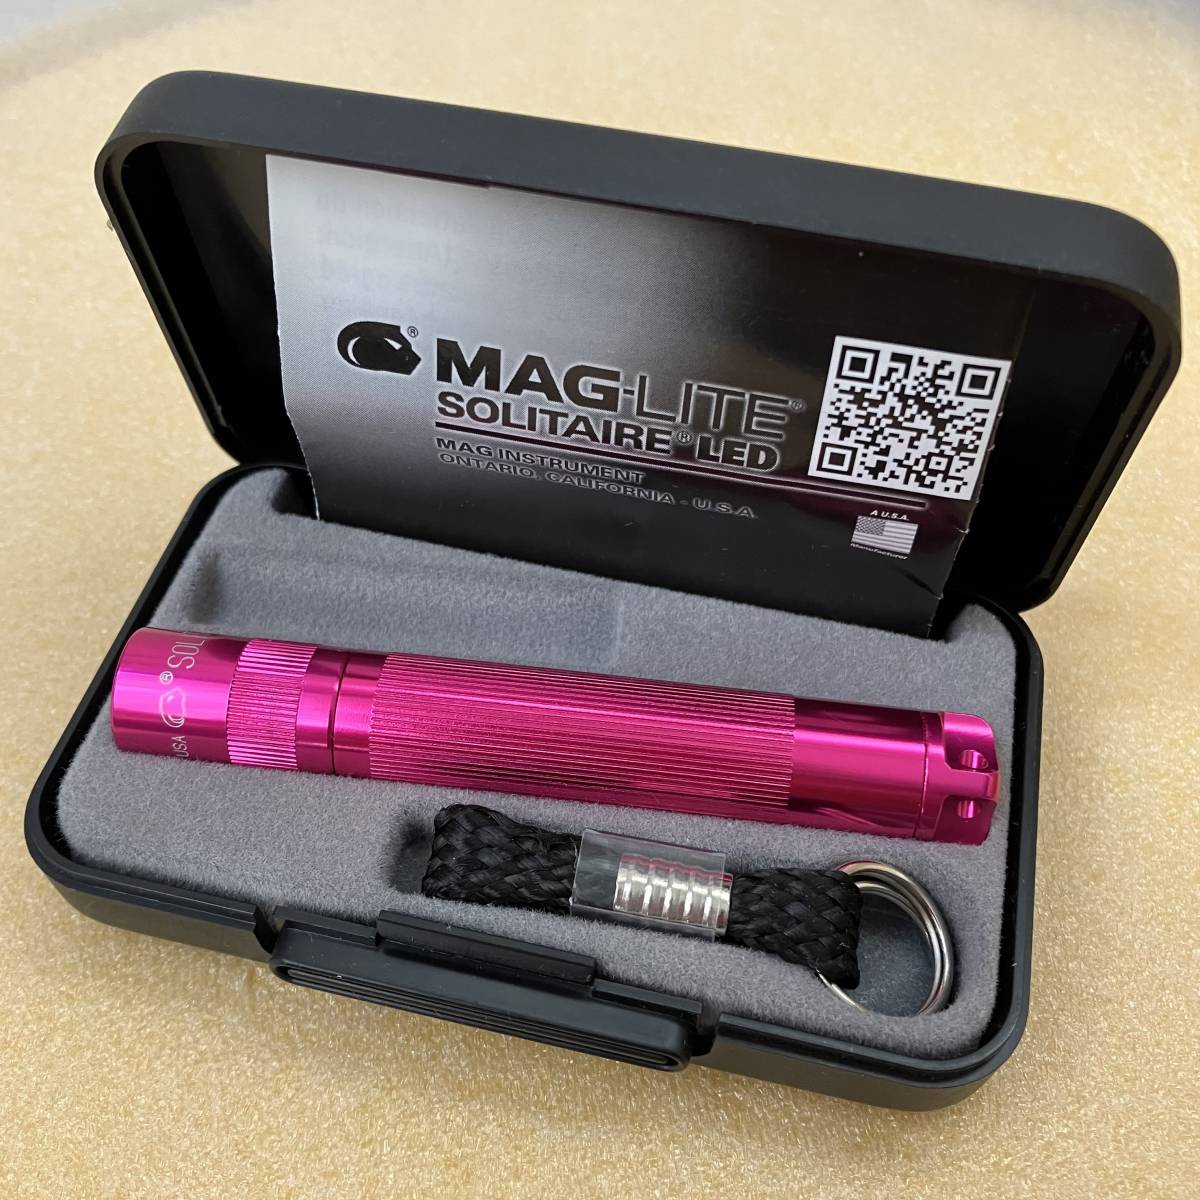 マグライト ソリテール MAG-LITE SOLITAIRE LED ピンク